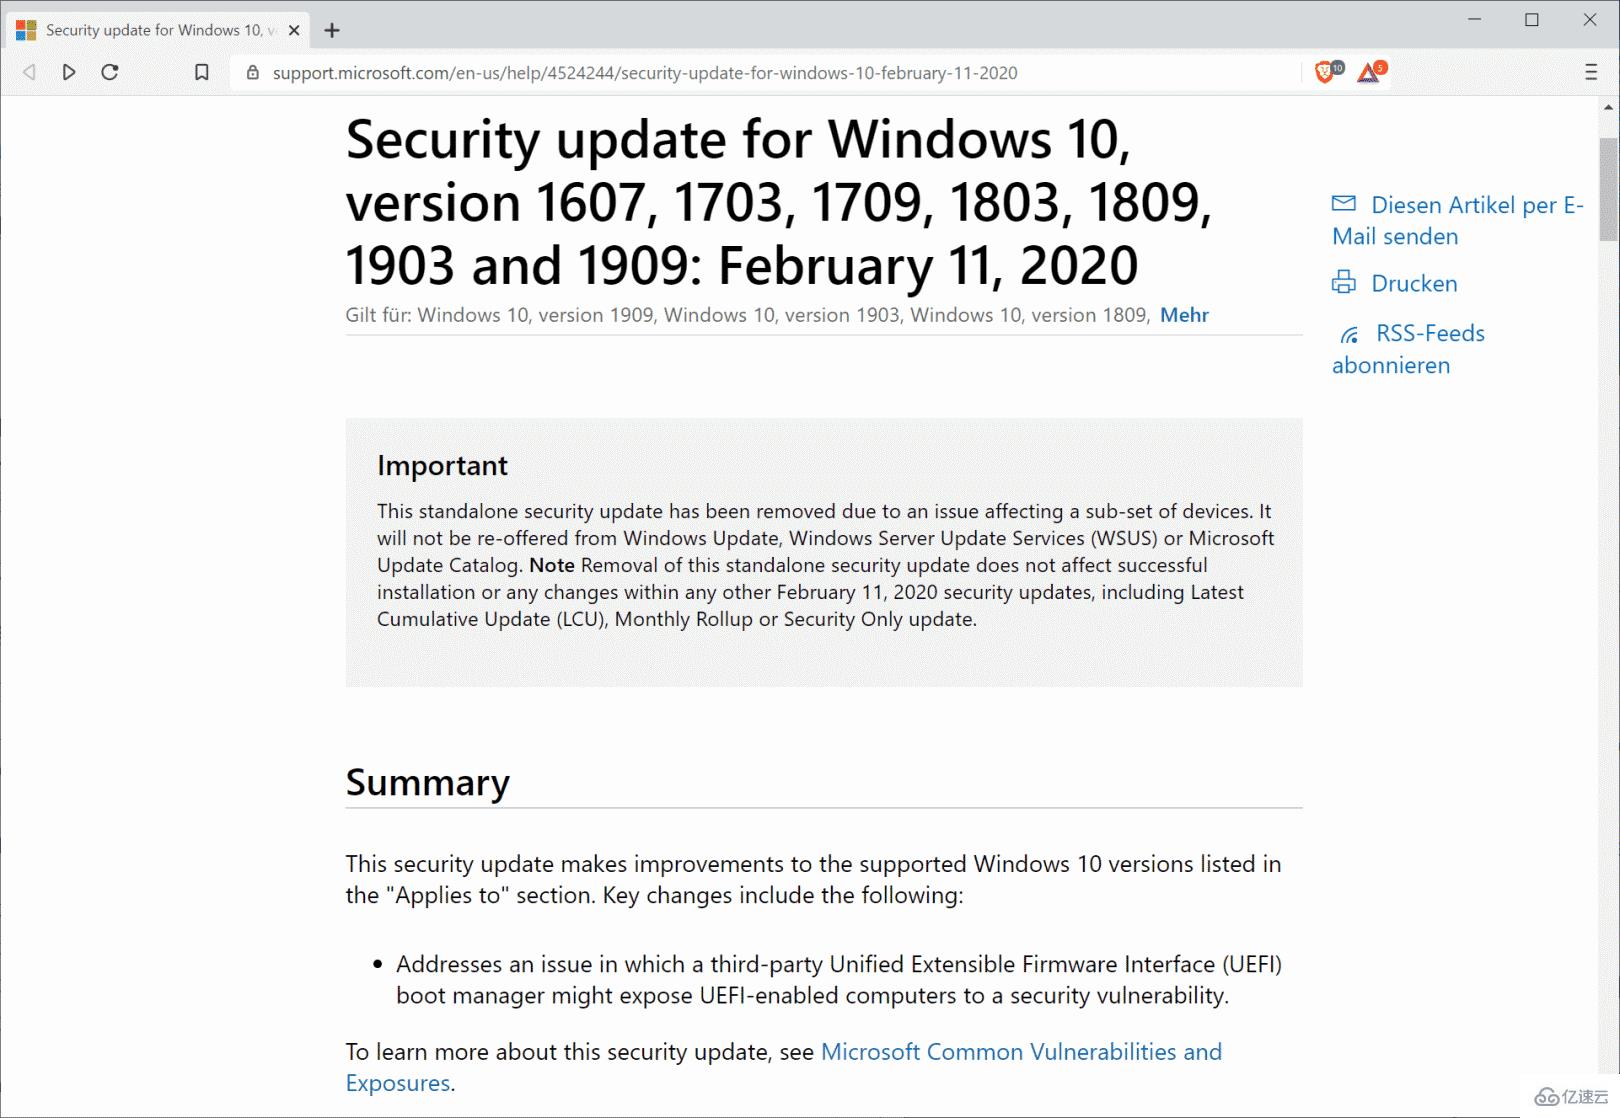 windows KB4524244更新了哪些内容